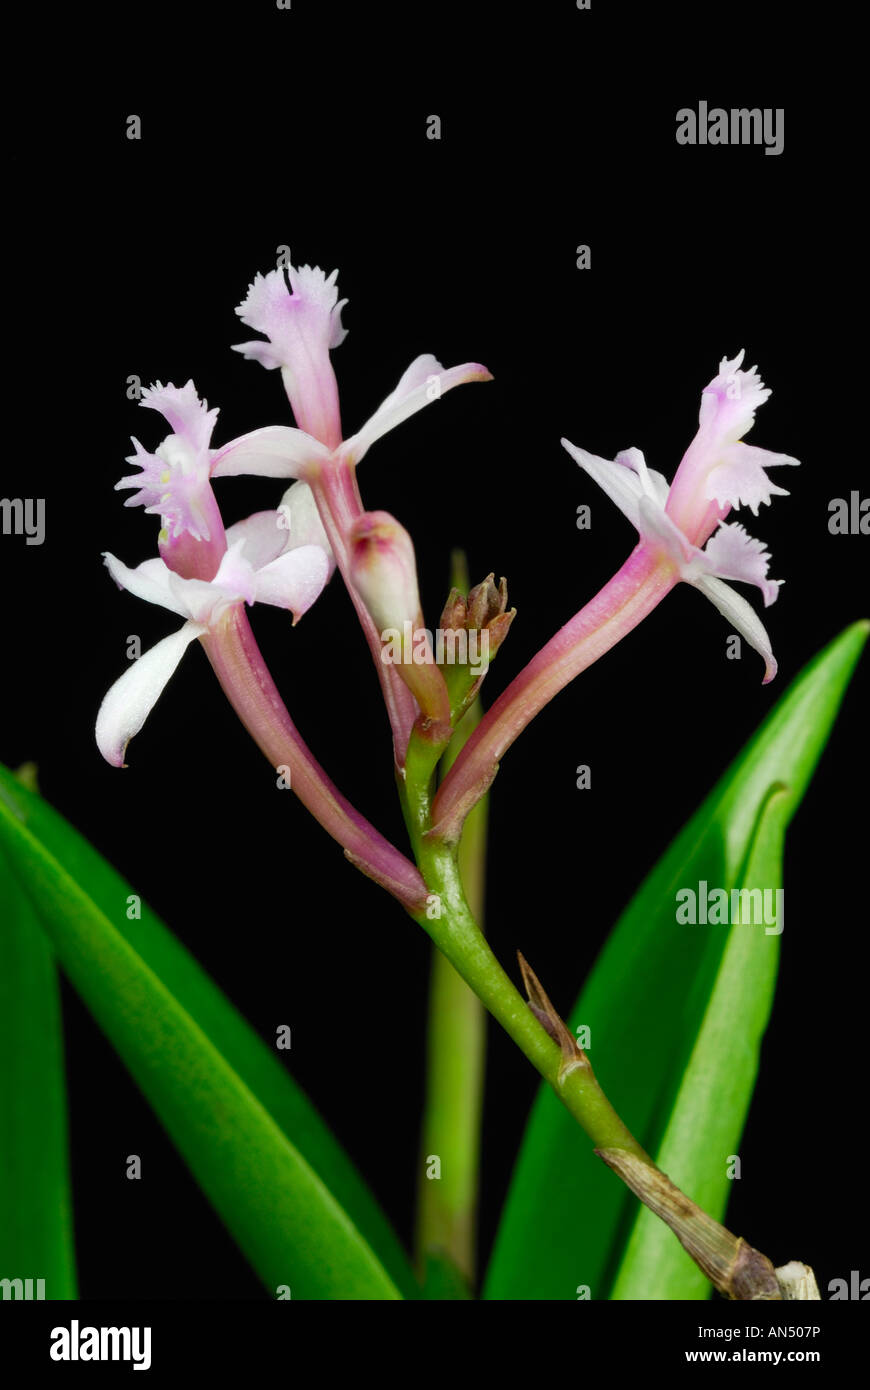 Epidendrum ellipticum Stock Photo